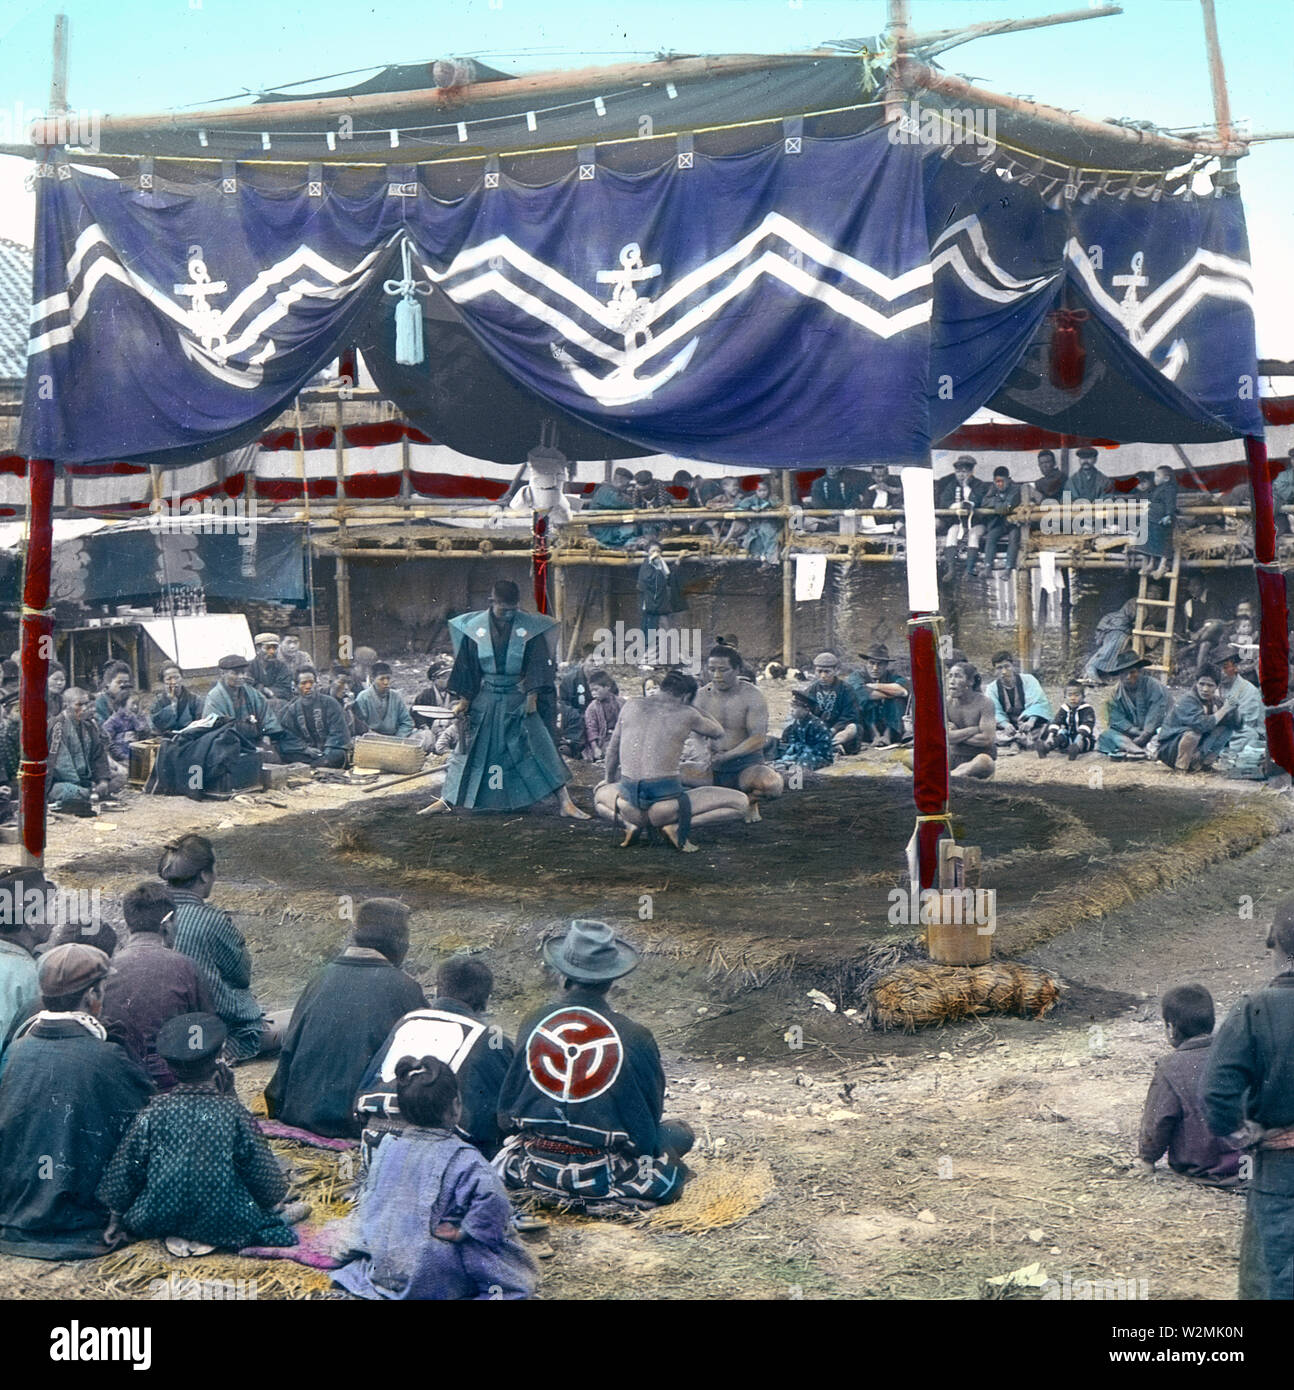 [1900s Japan - Sumo-ringer auf außerhalb der Arena, Tokio] - Sumo Ringer in einem äußeren Arena bei Eko-in Tempel (回向院) in Ryogoku, Tokio bereit, einen Kampf zu beginnen. Der Tempel wurde als Sumo Ringen Veranstaltungsort während der Edo-zeit (1603-1868) und Meiji (1868-1912) bekannt. Der erste Kampf war hier im September 1768 statt. Von Oktober 1833 (tenpo 4) bis 1909 (Meiji 42), die Zeit des "Eko-im Sumo" (回向院相撲), alle Sumo Turniere wurden im Tempel statt. 20. Jahrhundert vintage Glas schieben. Stockfoto